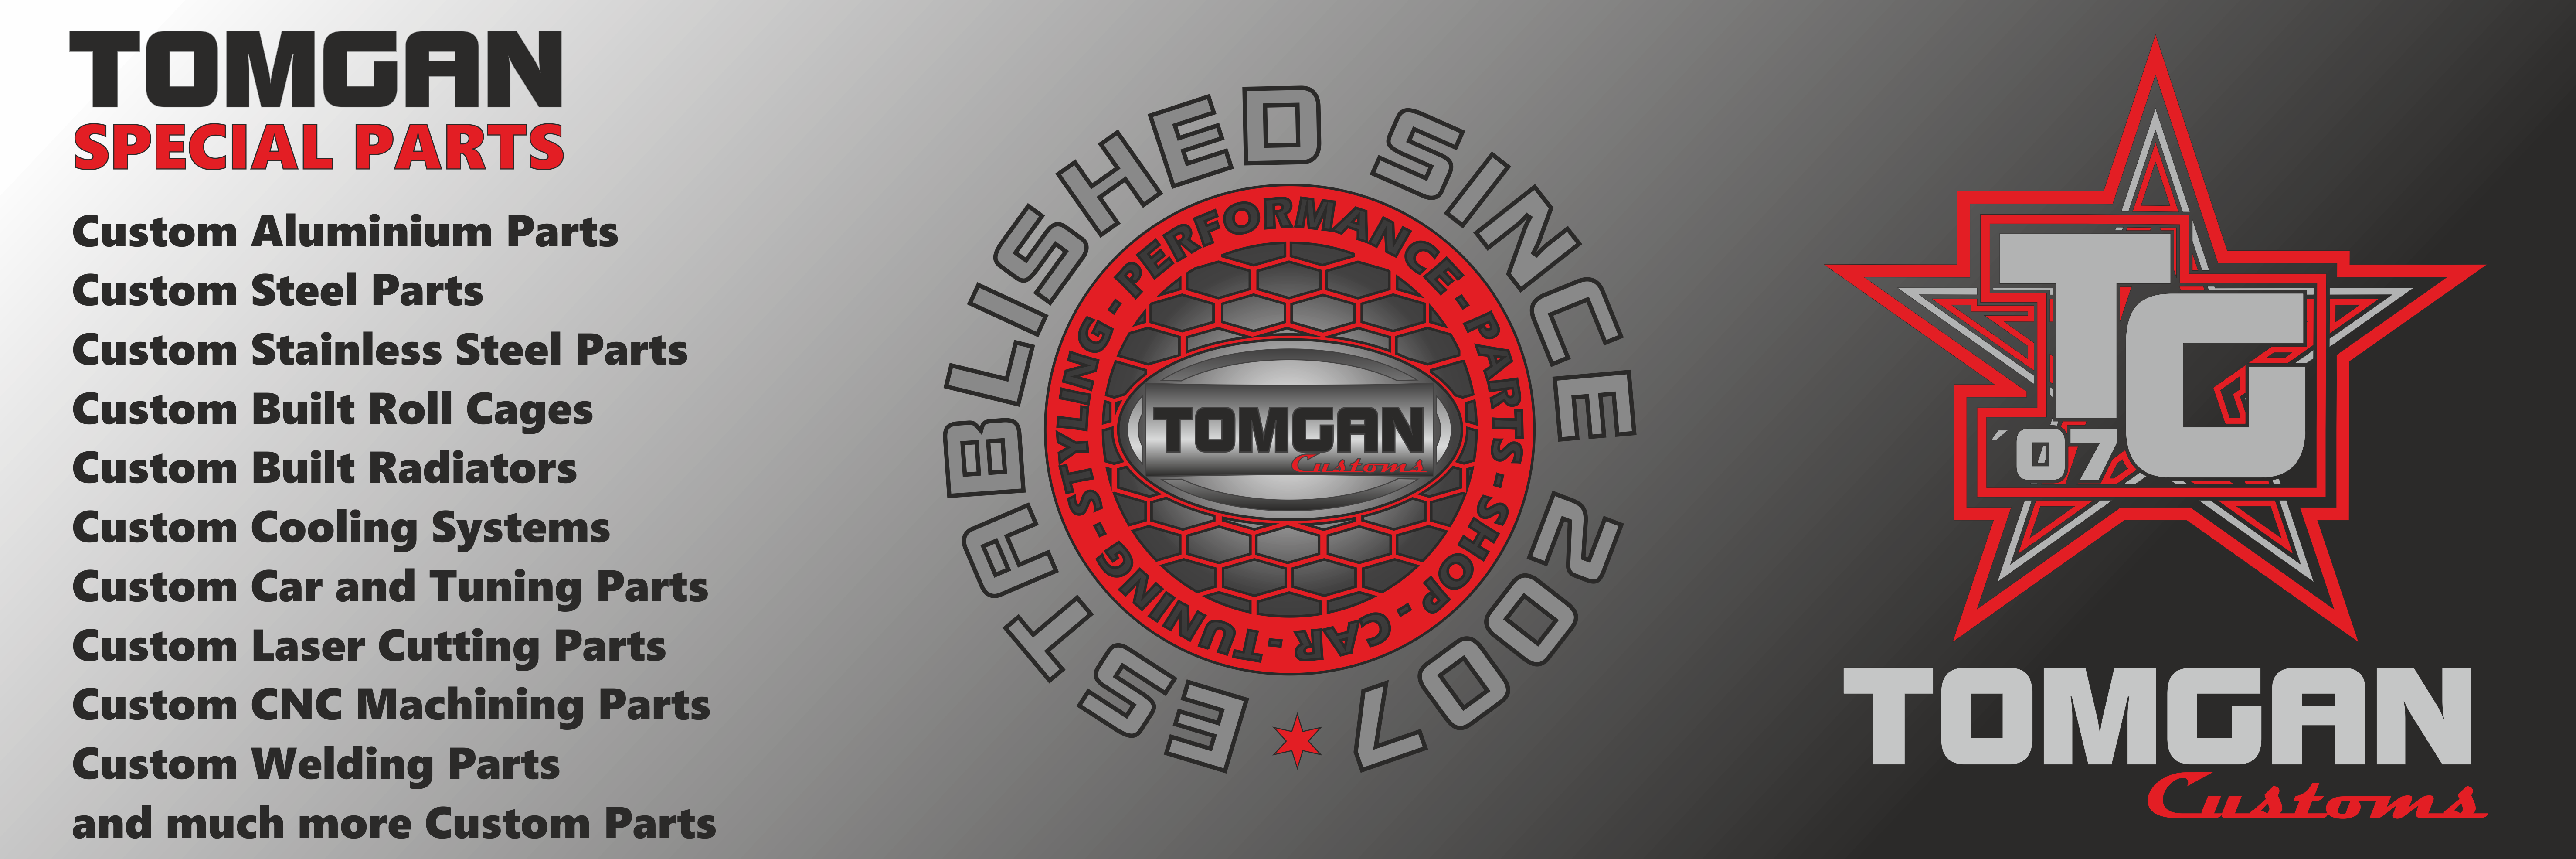 Banner_TOMGAN_Shop_1